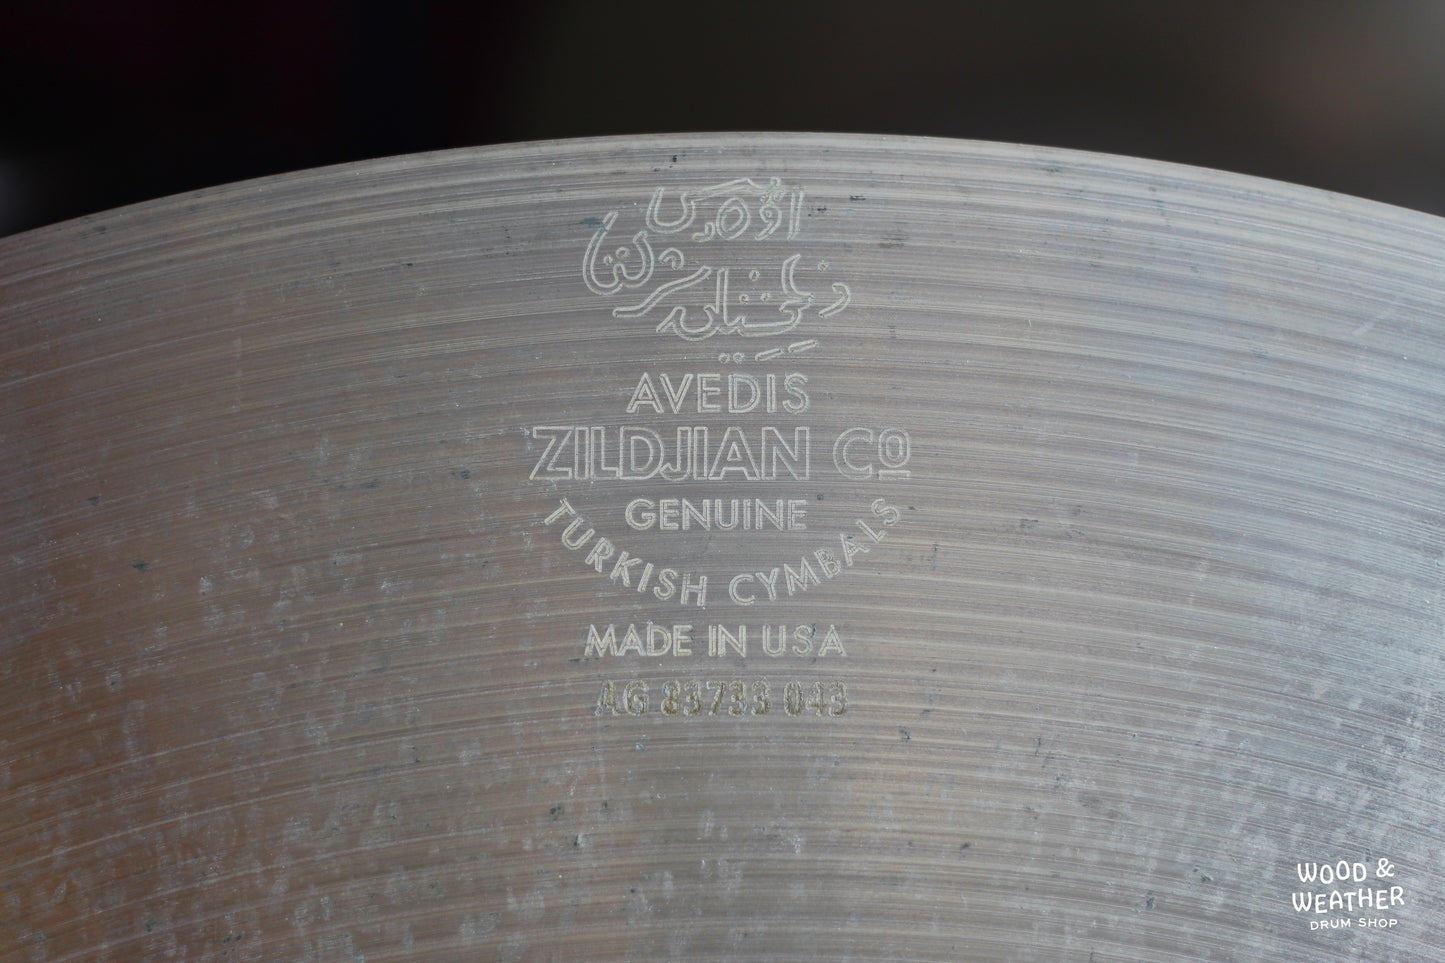 Used Zildjian 23" A Sweet Ride Cymbal 2970g